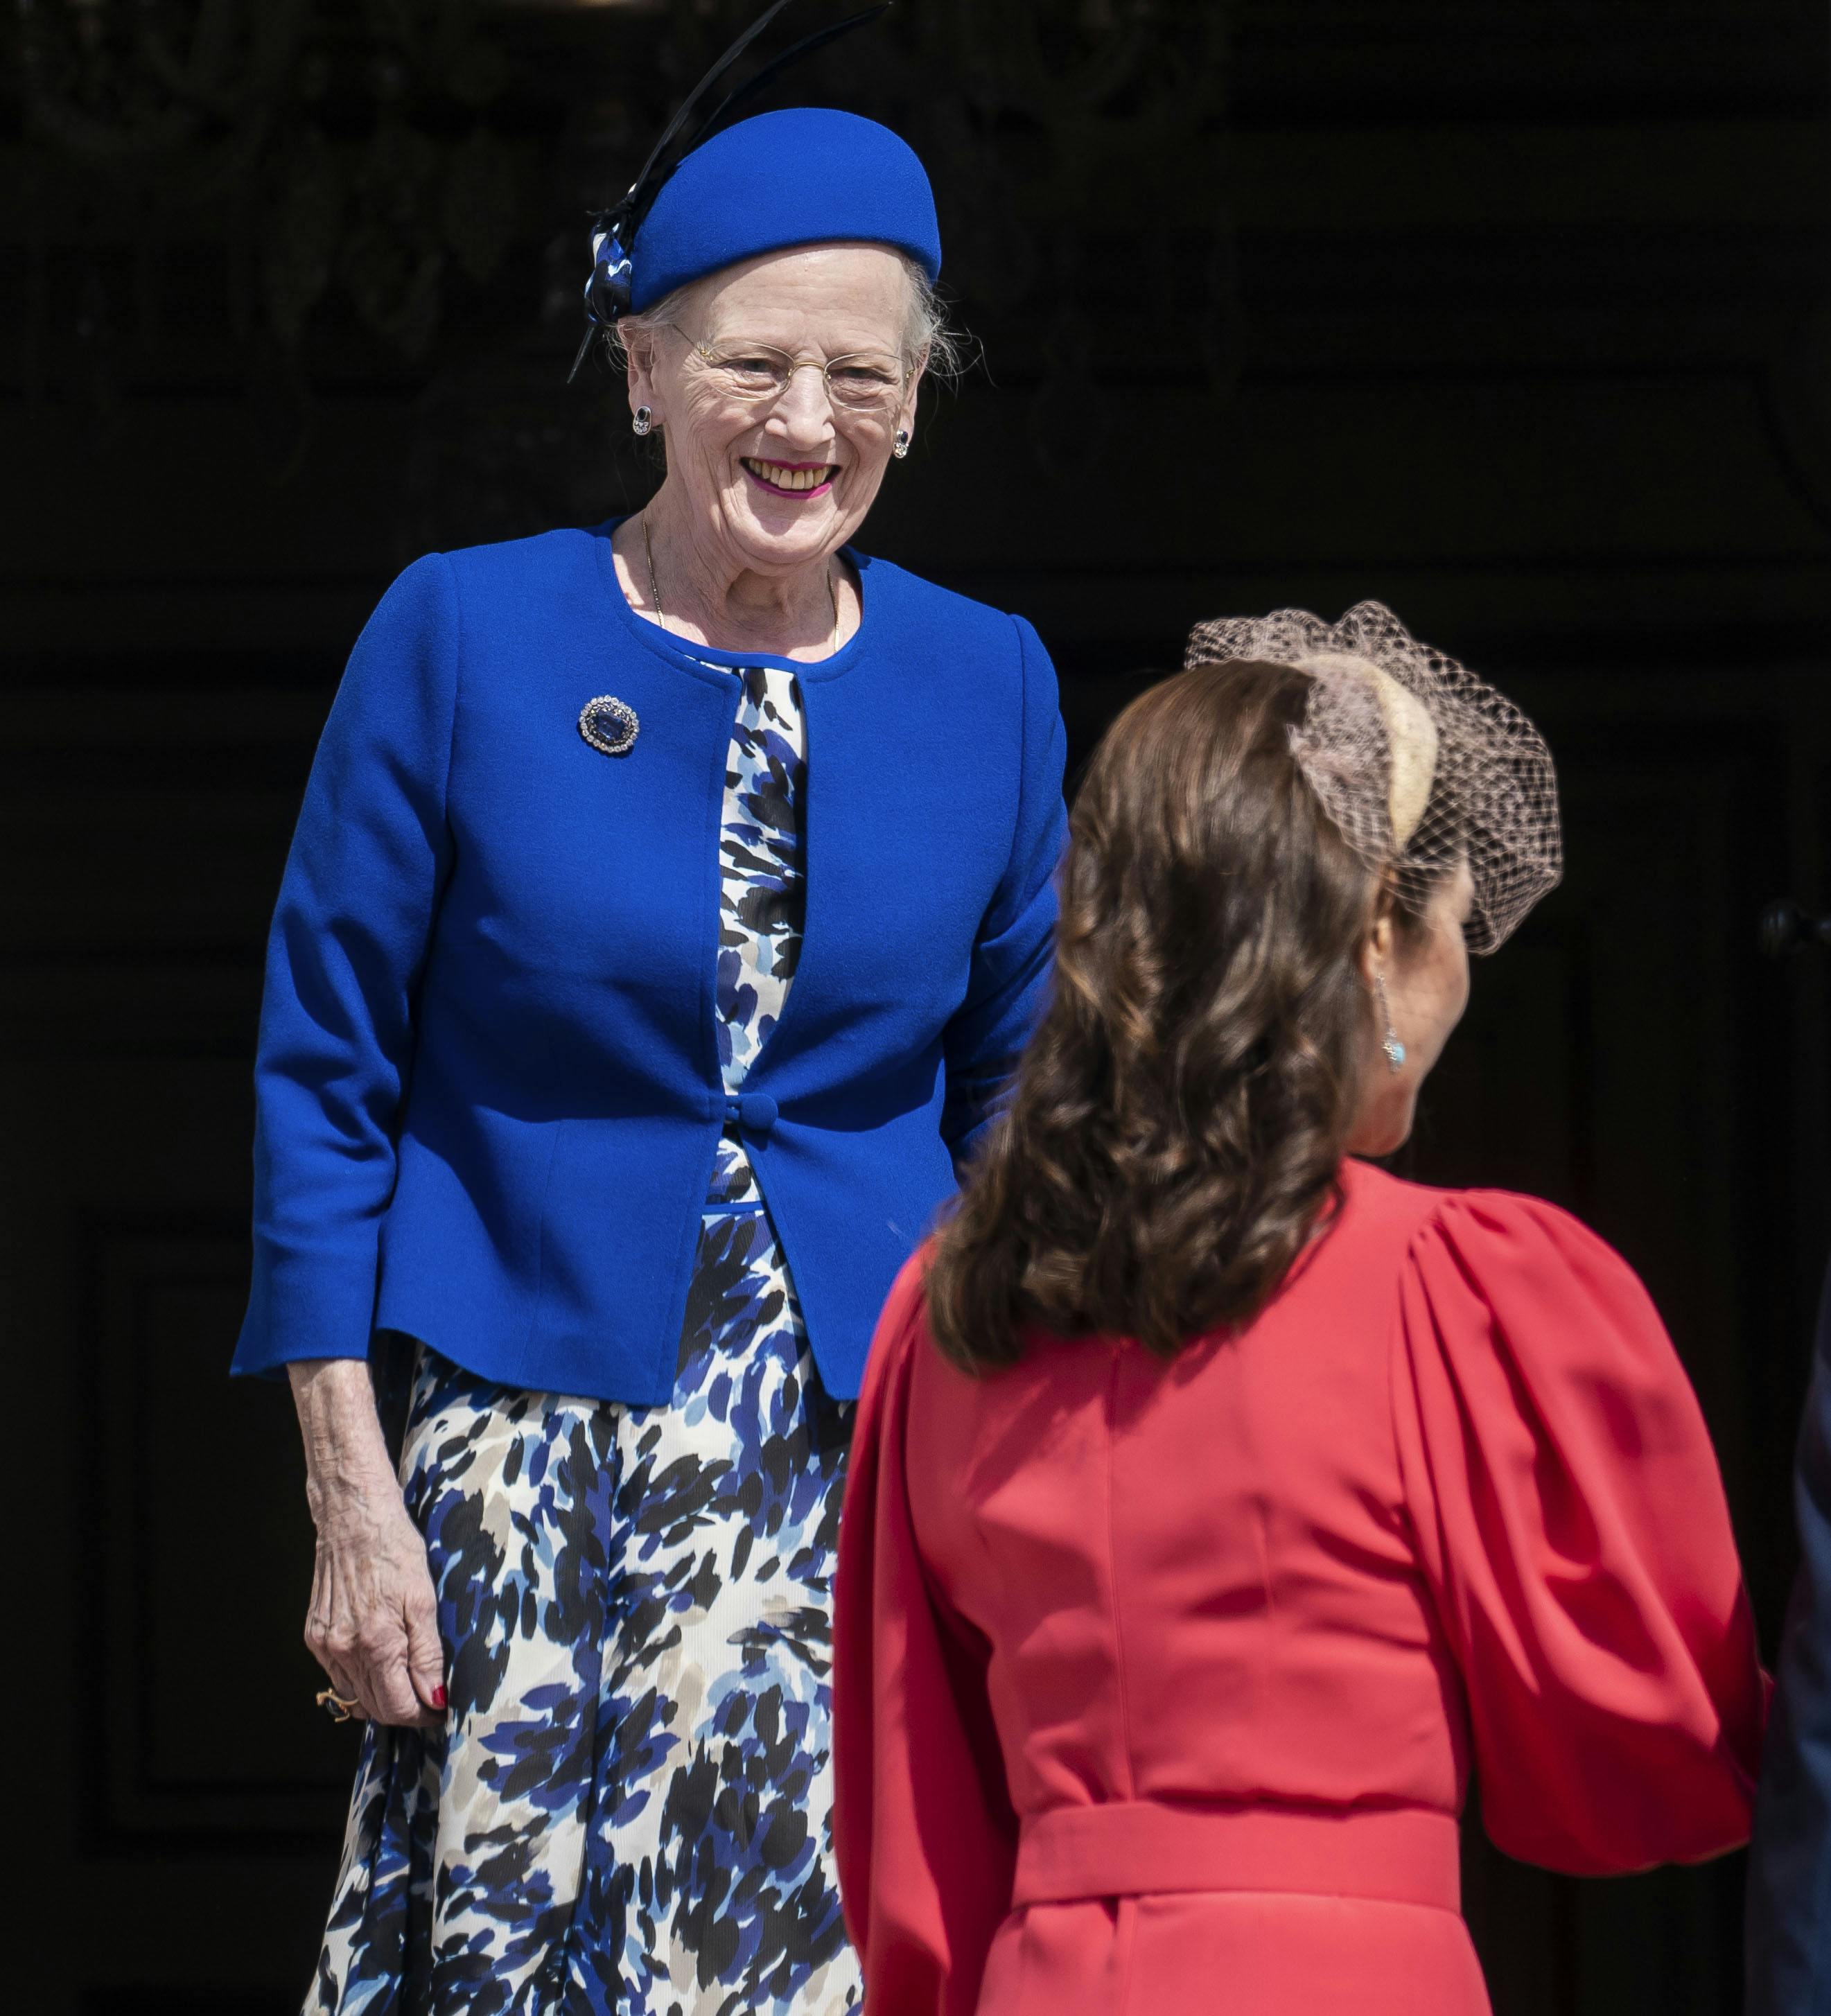 Dronning Margrethe har sin øjne på svigerdatteren i embedes medfør.&nbsp;
